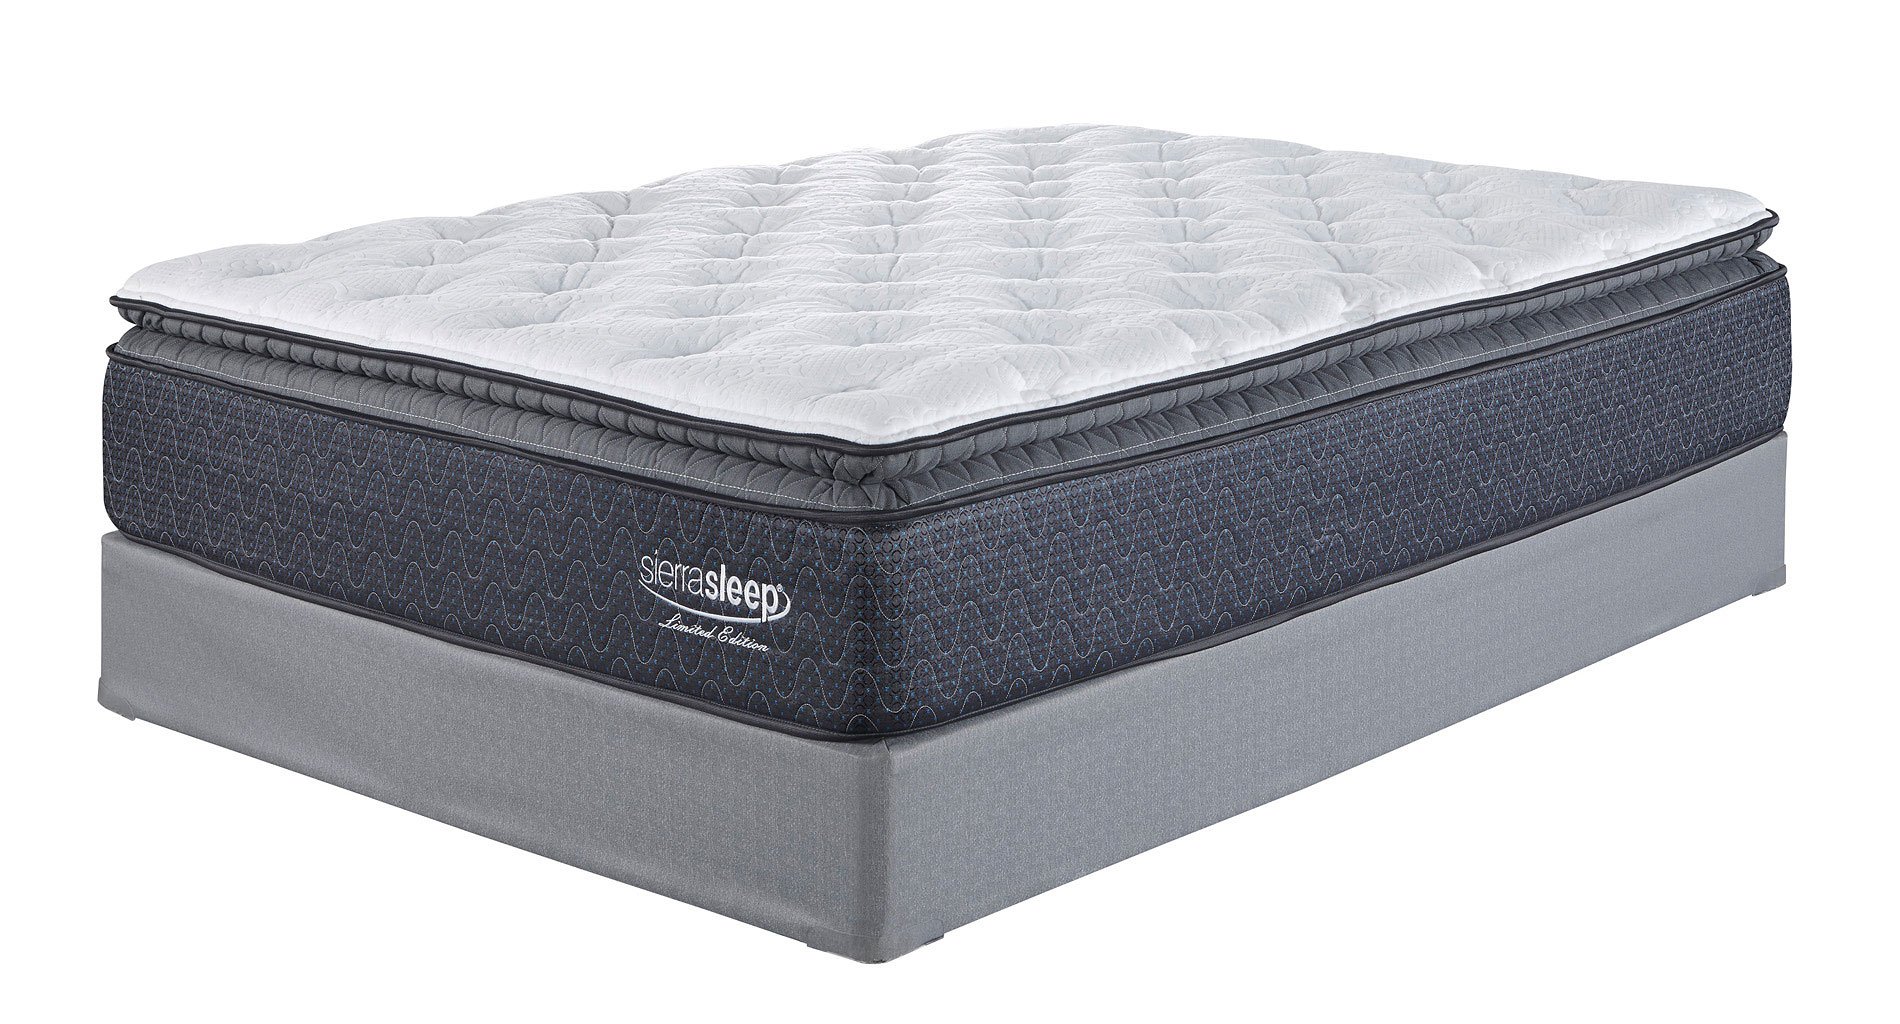 backmaster pillow top mattress